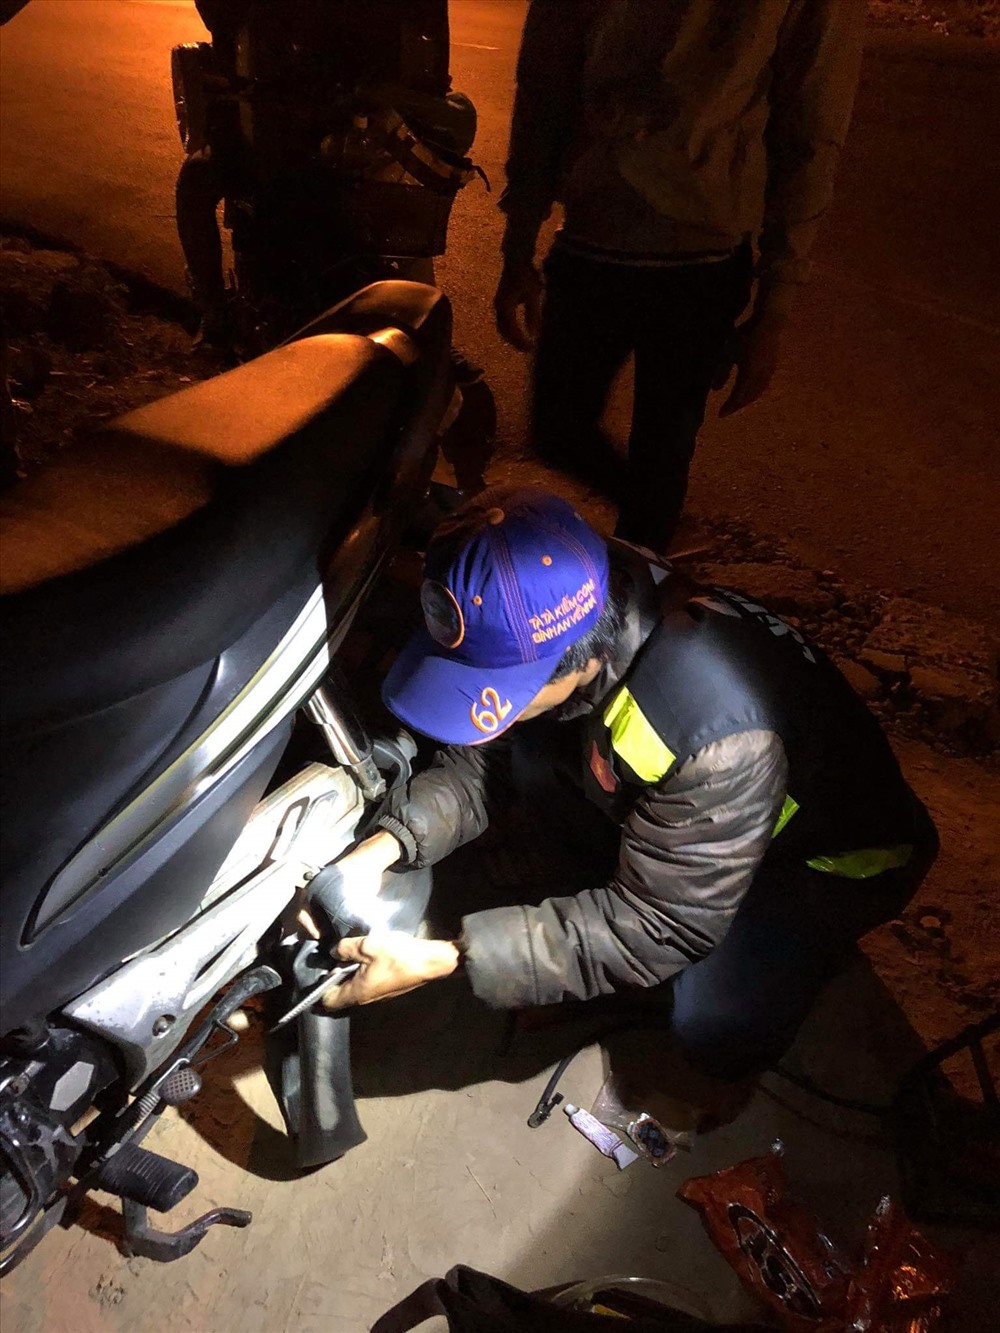 SOS Tân An là dịch vụ hỗ trợ khẩn cấp tại địa bàn Tân An - Long An, giúp các tài xế tìm được giải pháp nhanh chóng khi gặp sự cố về xe cộ. Hãy cùng khám phá hình ảnh về dịch vụ này để đảm bảo an toàn và thuận tiện trong việc di chuyển hàng ngày.